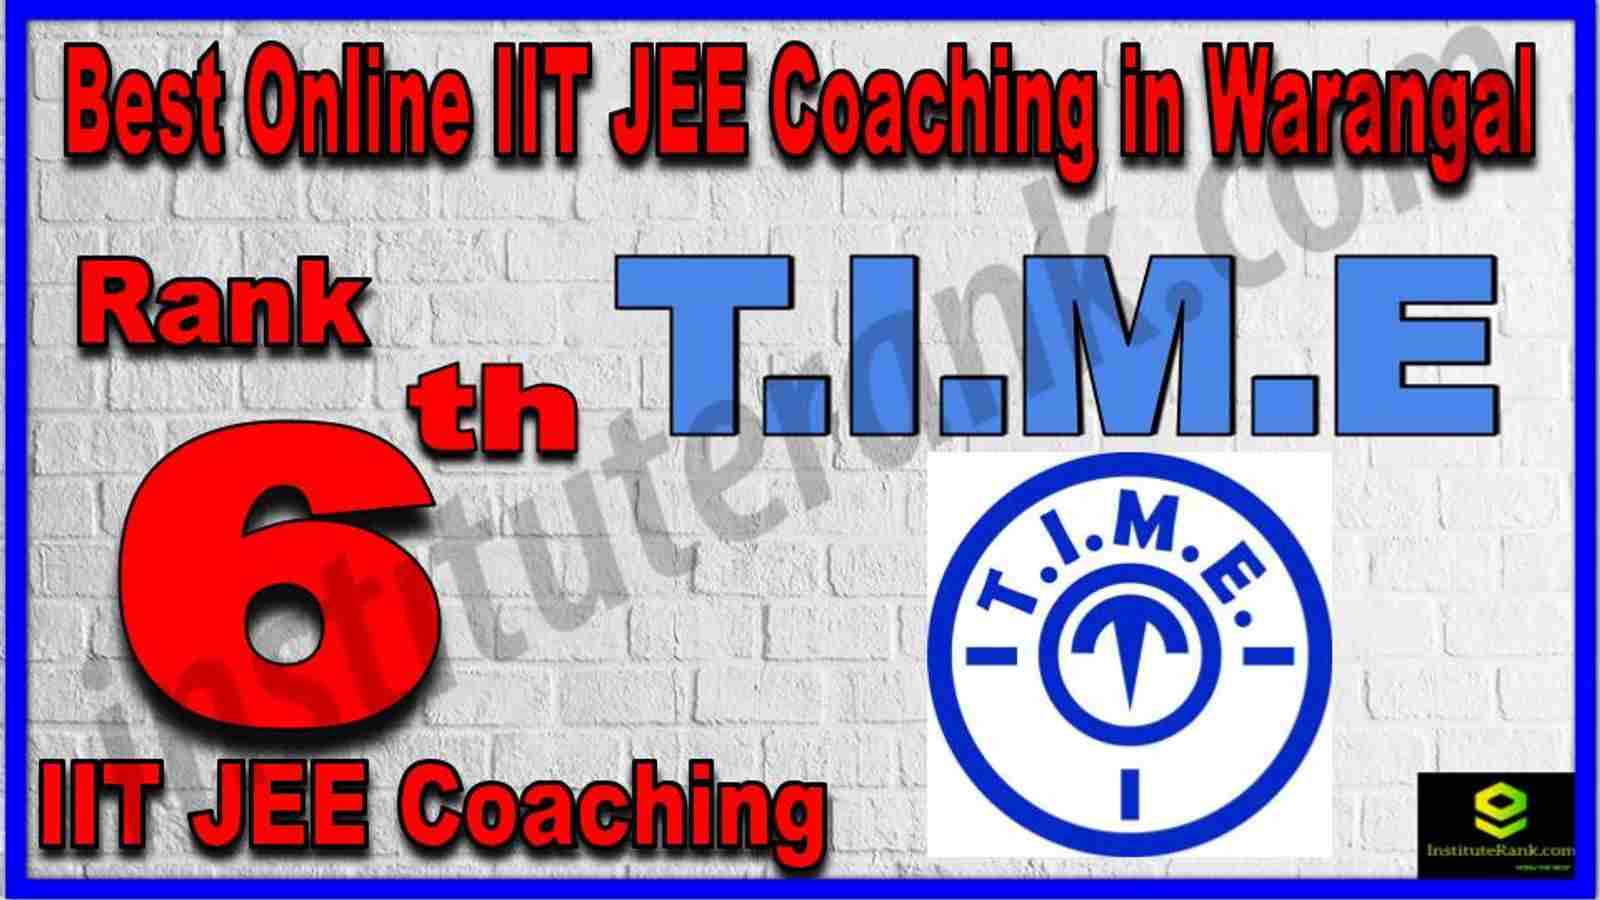 Rank 6th Best Online IIT JEE Coaching in Warangal